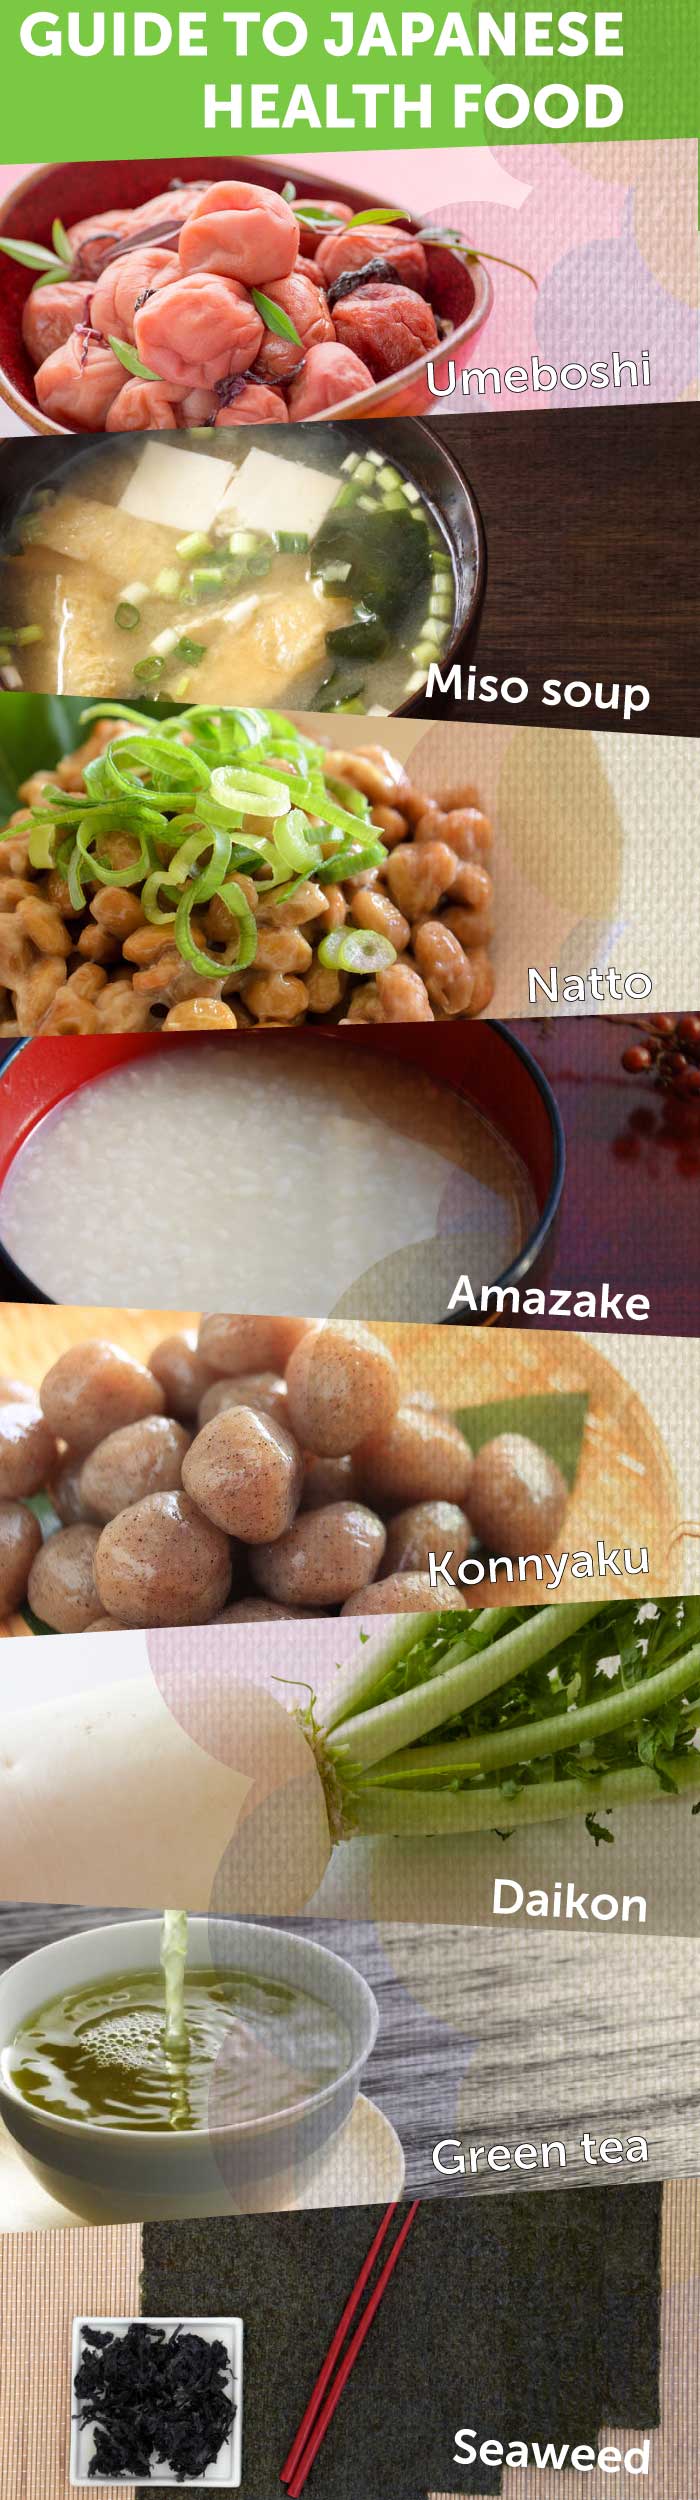 What is Japan healthiest food?